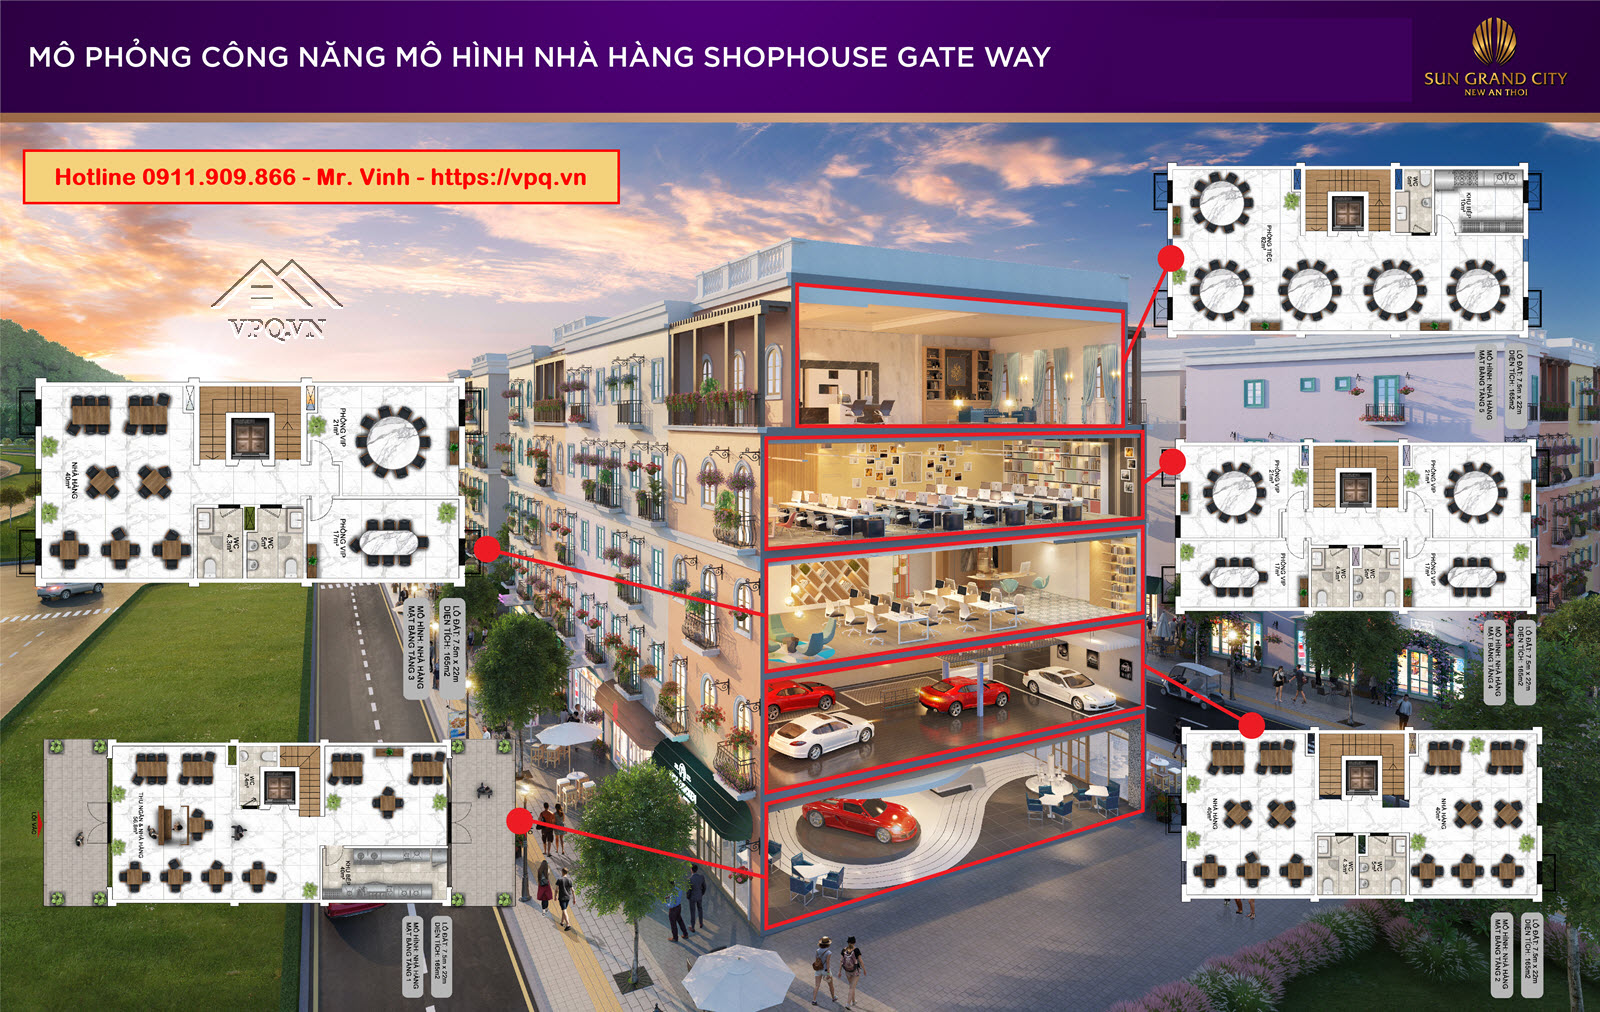 Thiết kế Shophouse Gateway An Thới mô hình nhà hàng